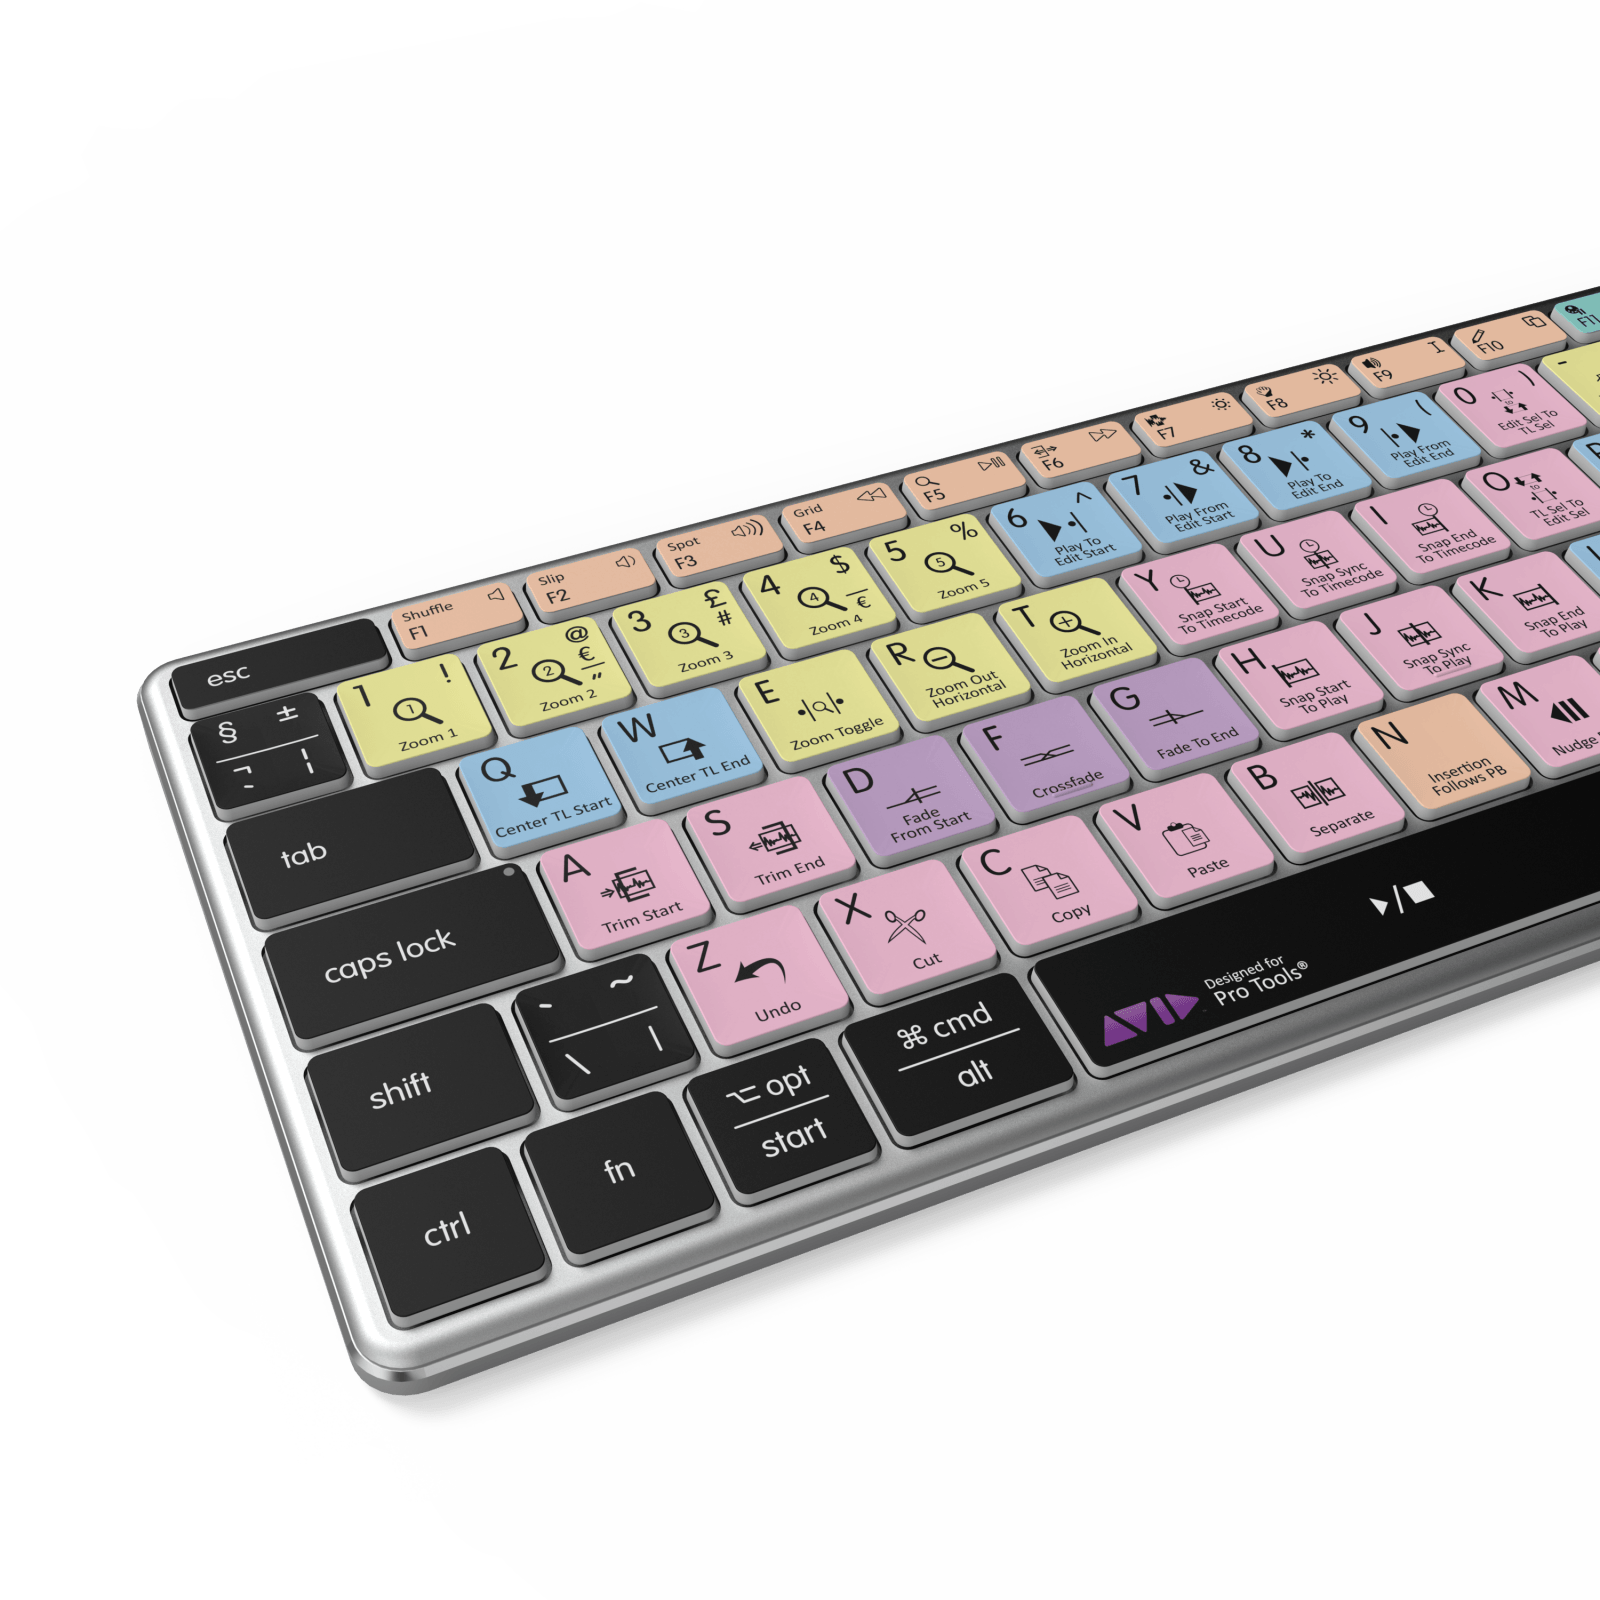 NEW Pro Tools Keyboard | Backlit & Wireless | Mac & PC - Editors Keys